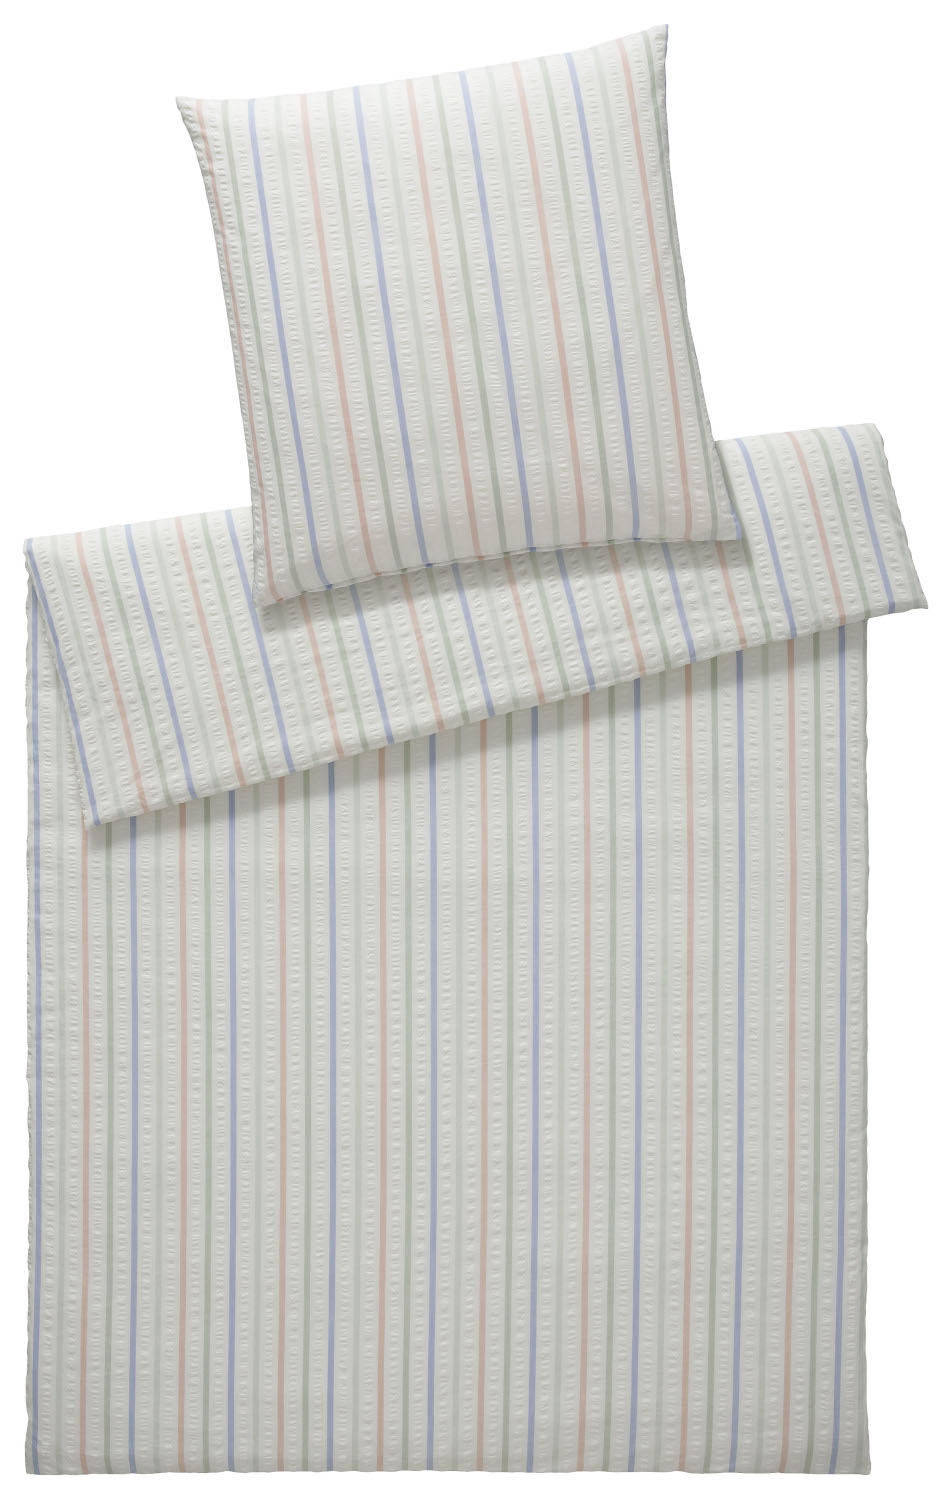 Elegante Seersucker Bettwäsche Kopenhagen weiß mit Streifen, aus 100% Baumwolle, bügelfrei